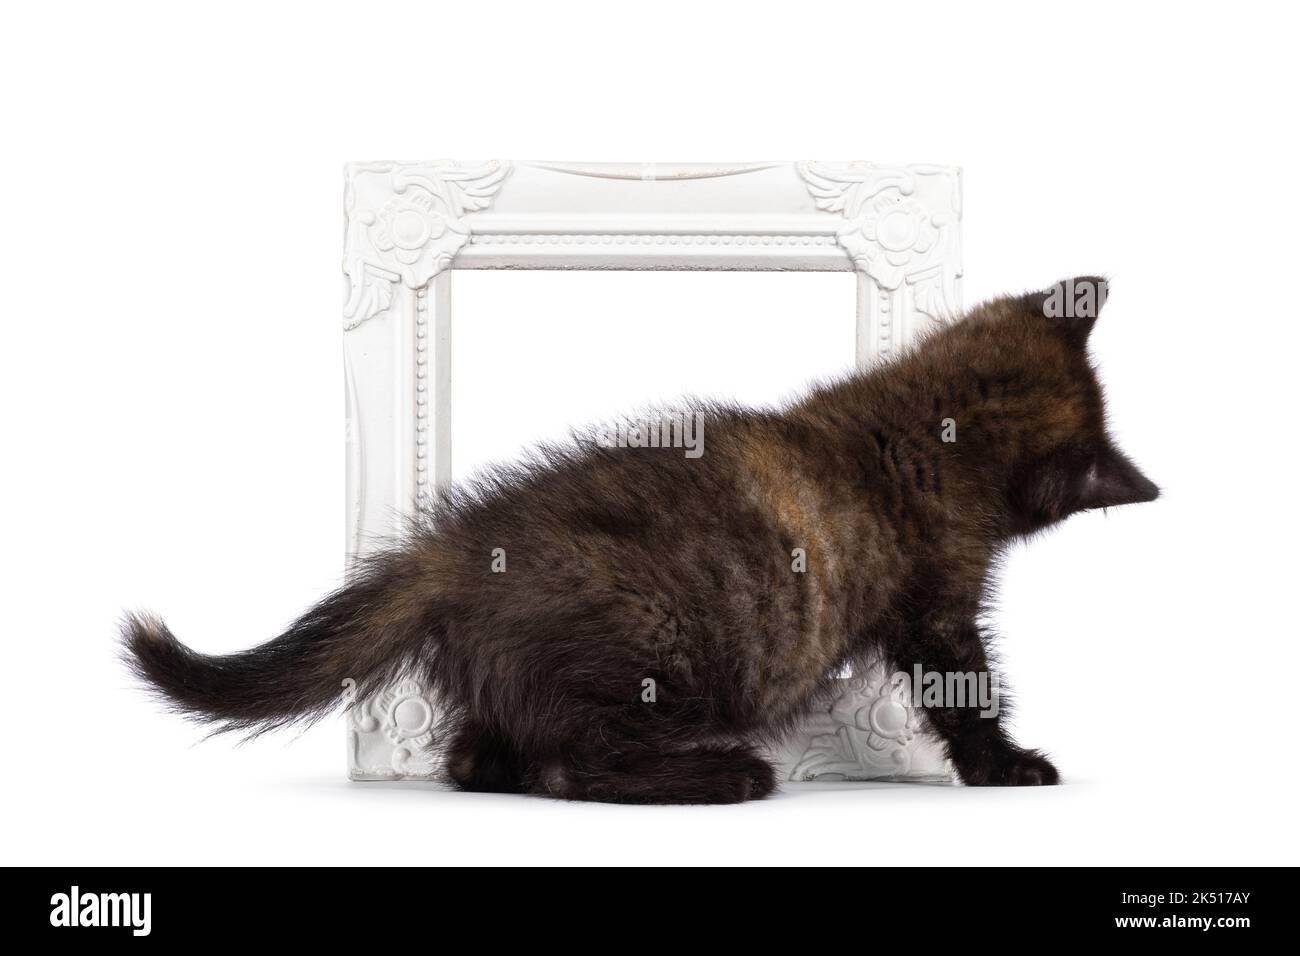 Sehr winziges neugieriges kleines schildpatt britisches Kurzhaar-Kätzchen, das mit Bilderrahmen spielt. Kein Gesicht. Isoliert auf weißem Hintergrund. Stockfoto